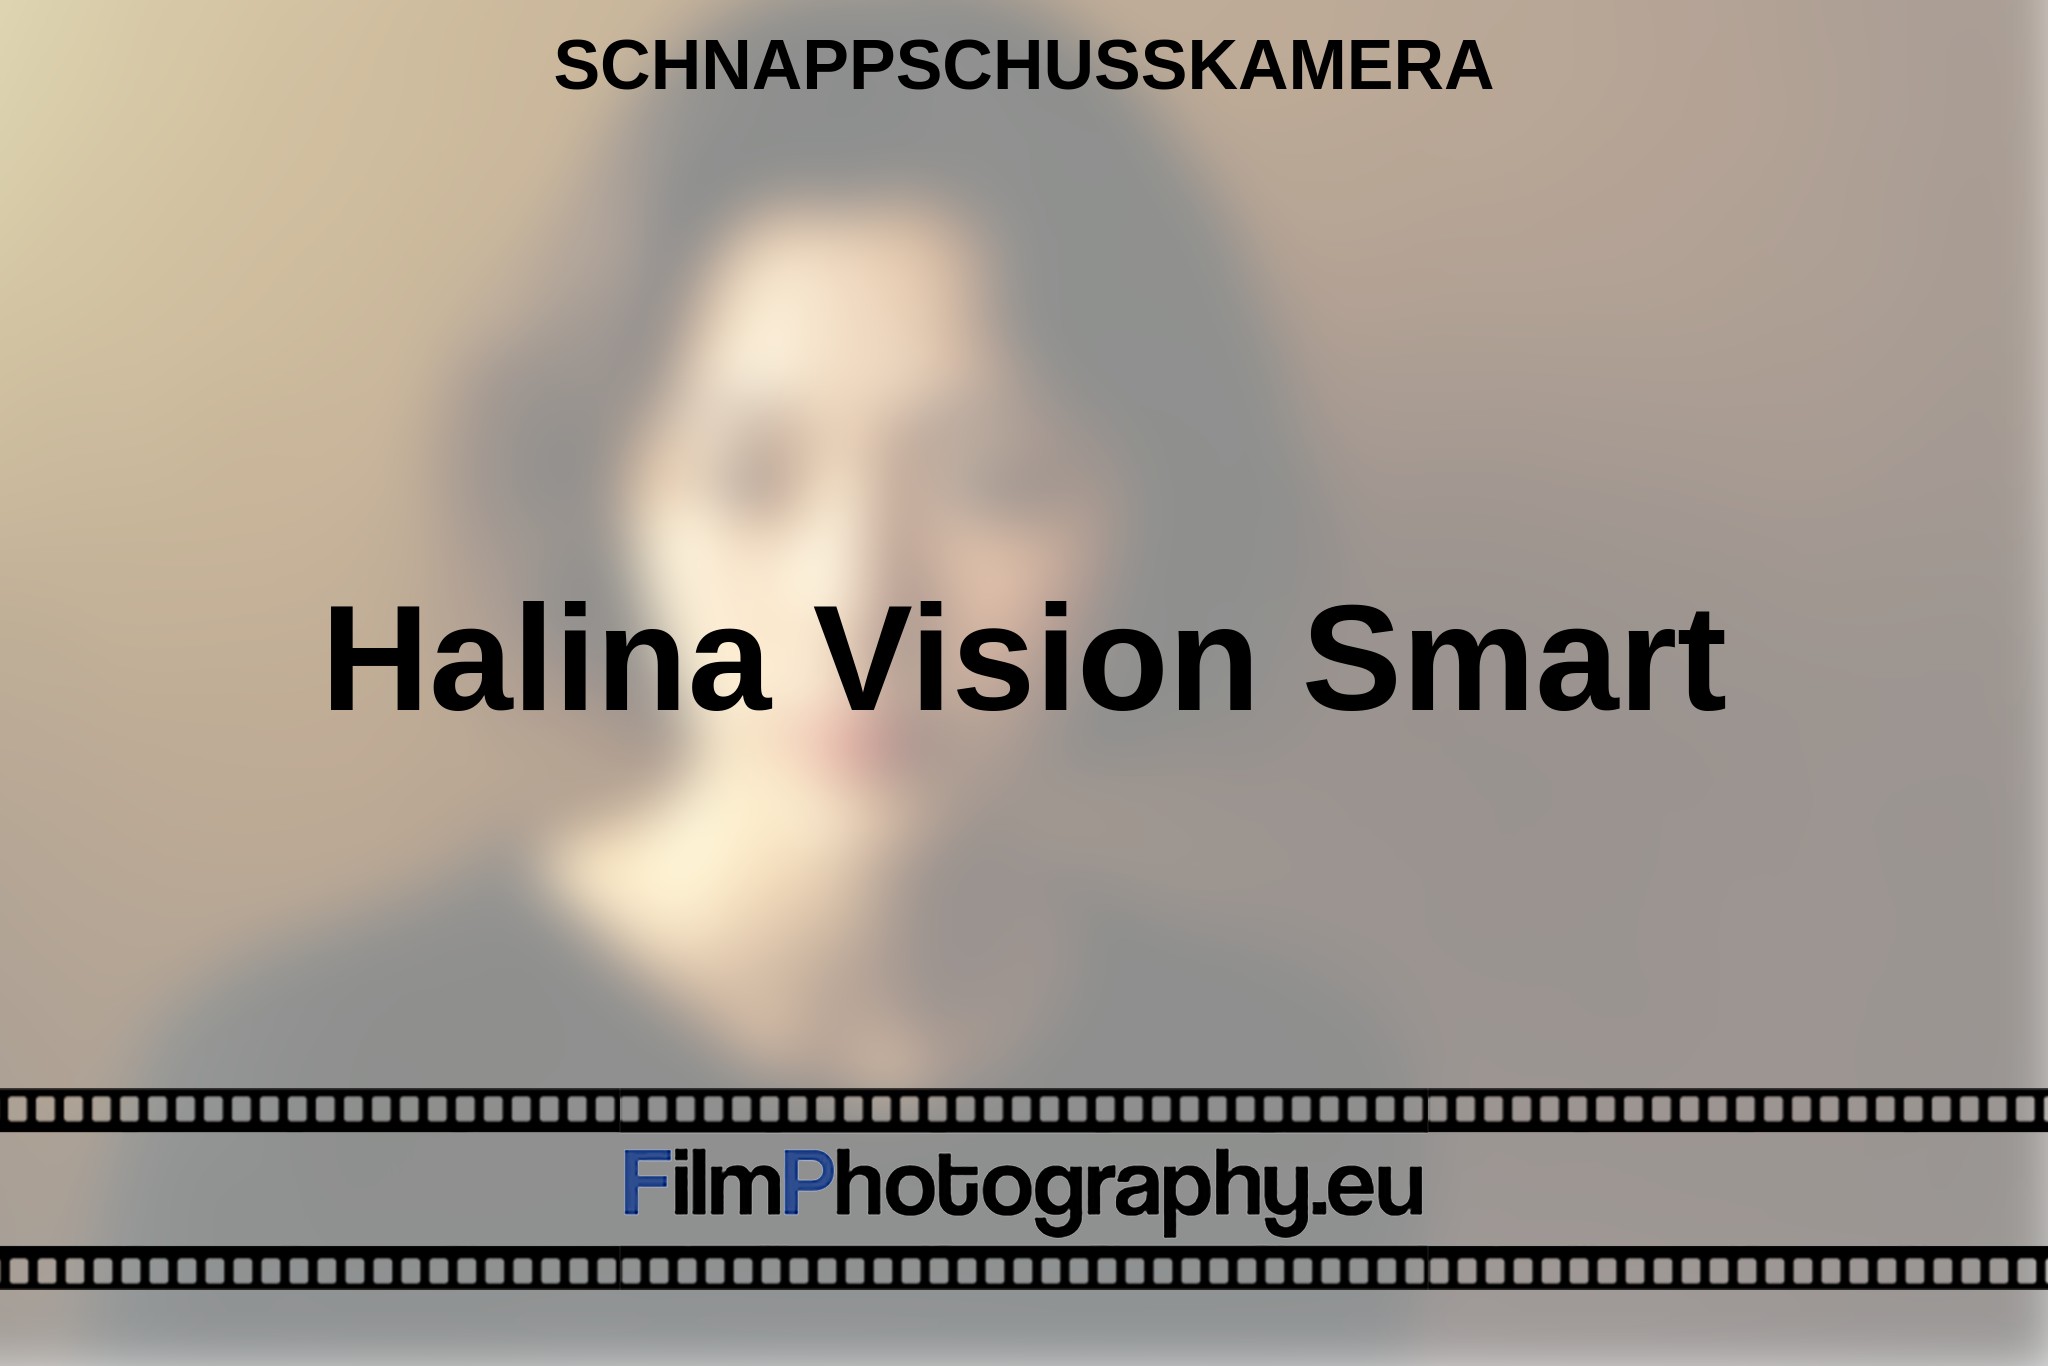 halina-vision-smart-schnappschusskamera-bnv.jpg